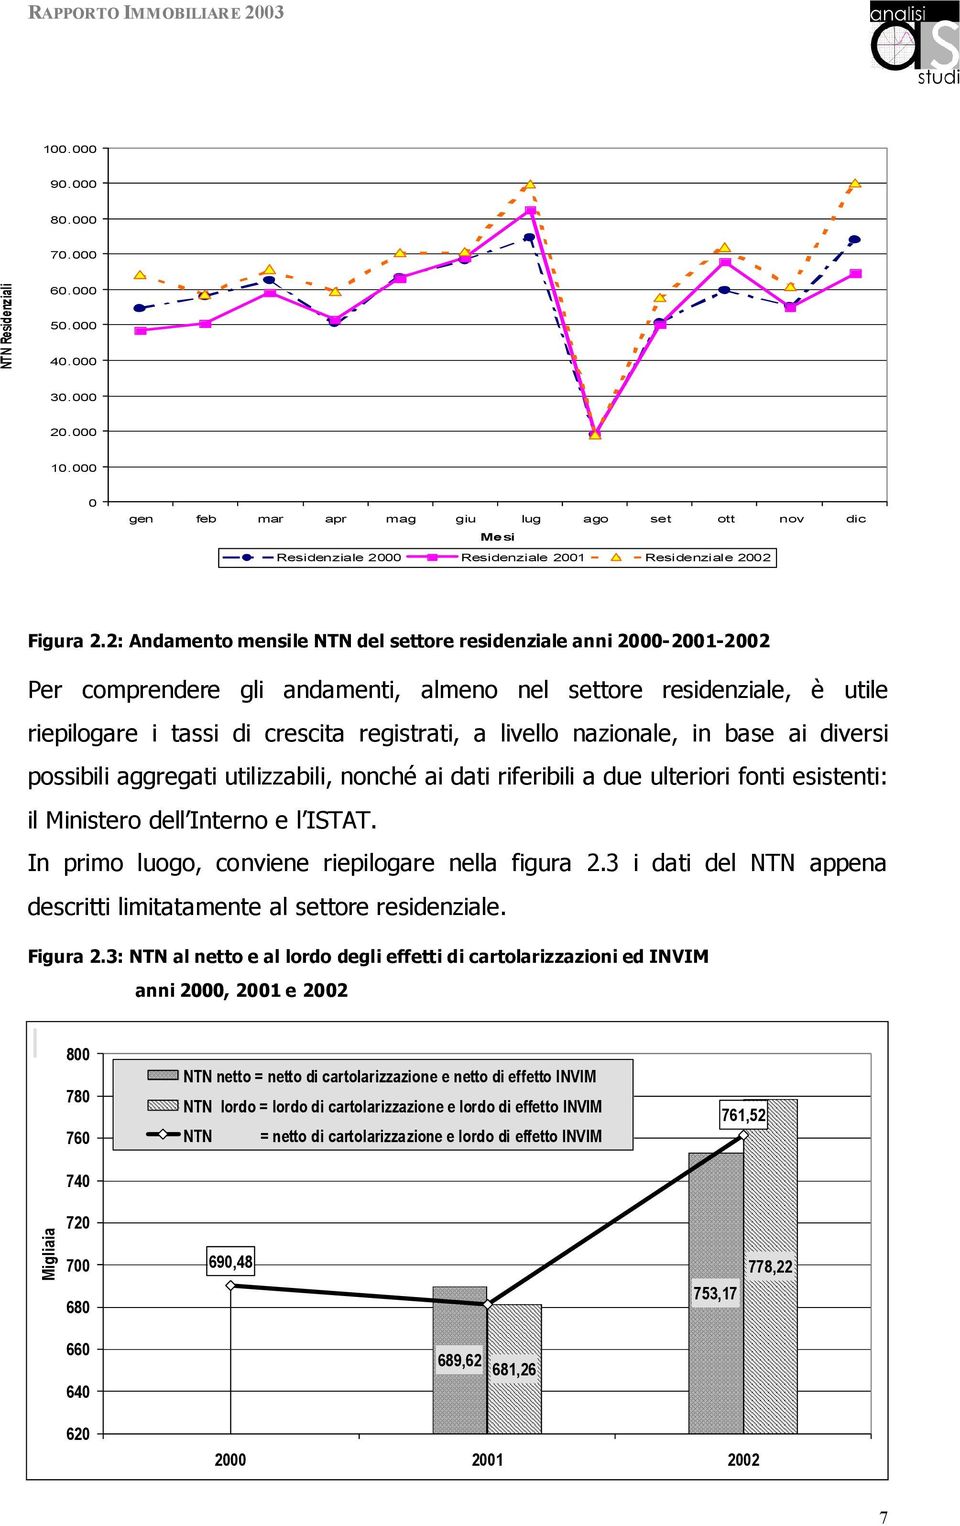 2: Andamento mensile NTN del settore residenziale anni 2000-2001-2002 Per comprendere gli andamenti, almeno nel settore residenziale, è utile riepilogare i tassi di crescita registrati, a livello